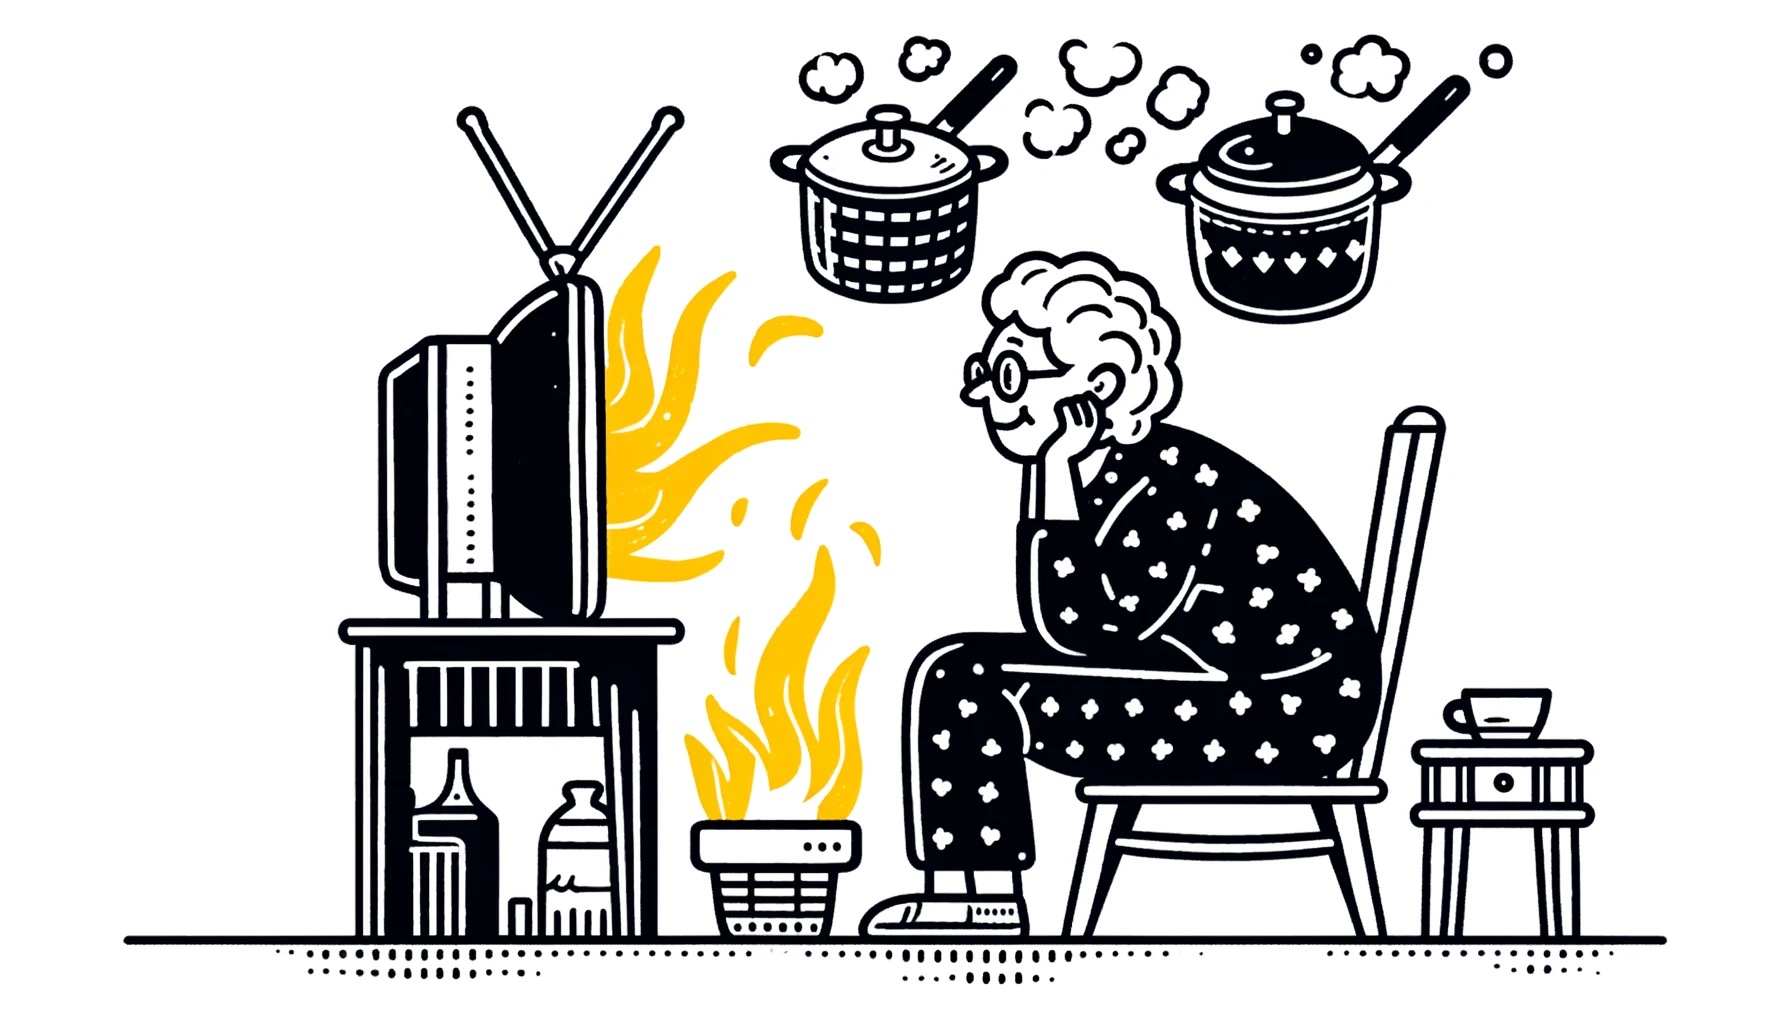 Landschaftszeichnung einer älteren Frau in der mittleren Phase der Demenz, fasziniert von einem brennenden Fernseher, während das Essen auf dem Herd steht. Die verwirrende Zeichnung symbolisiert die Verwirrung in ihrem Kopf.